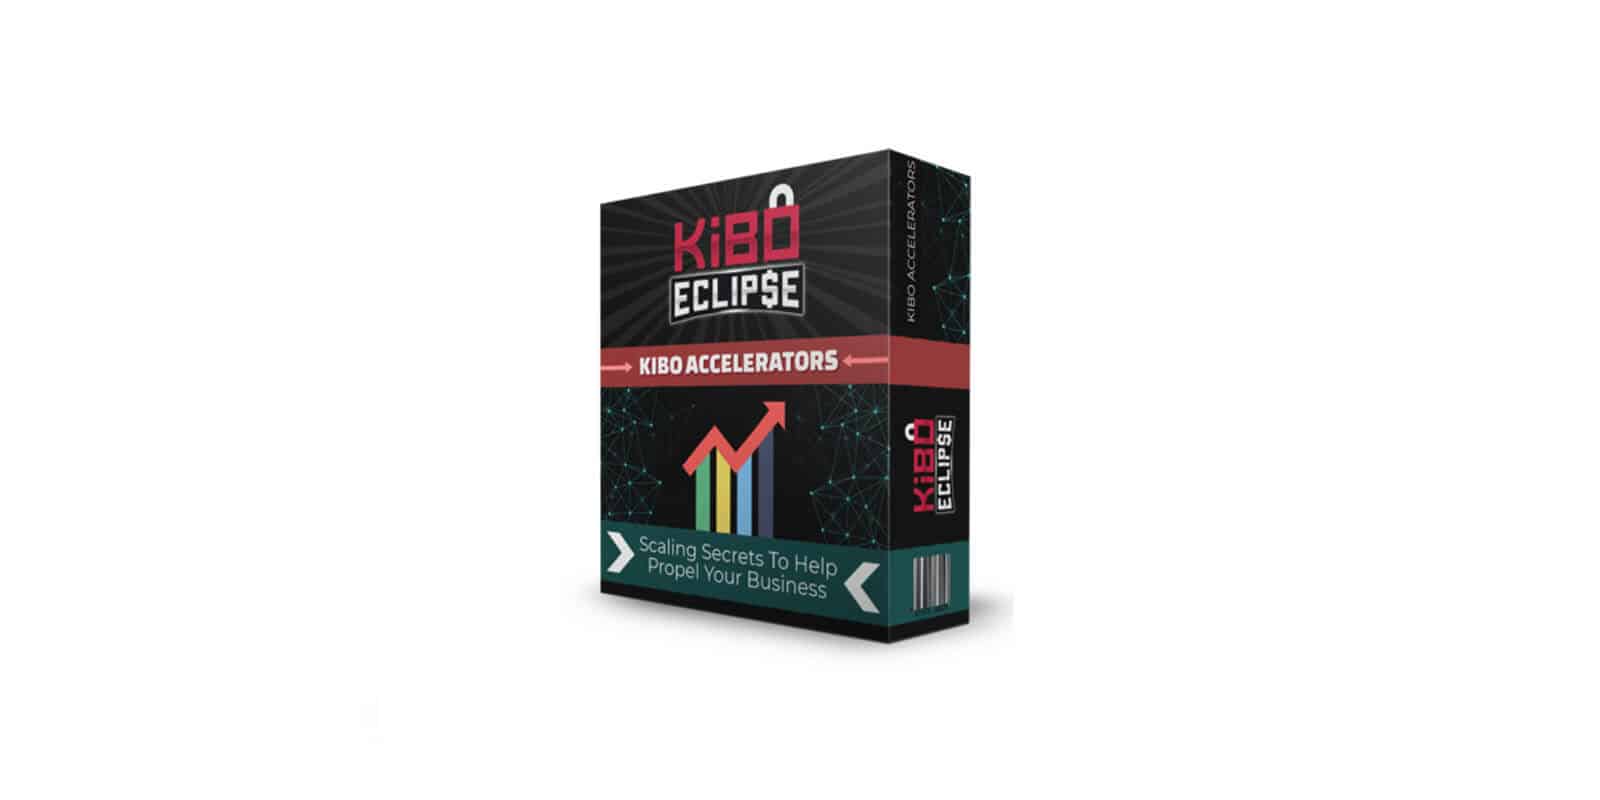 Kibo Eclipse Kibo Accelarators